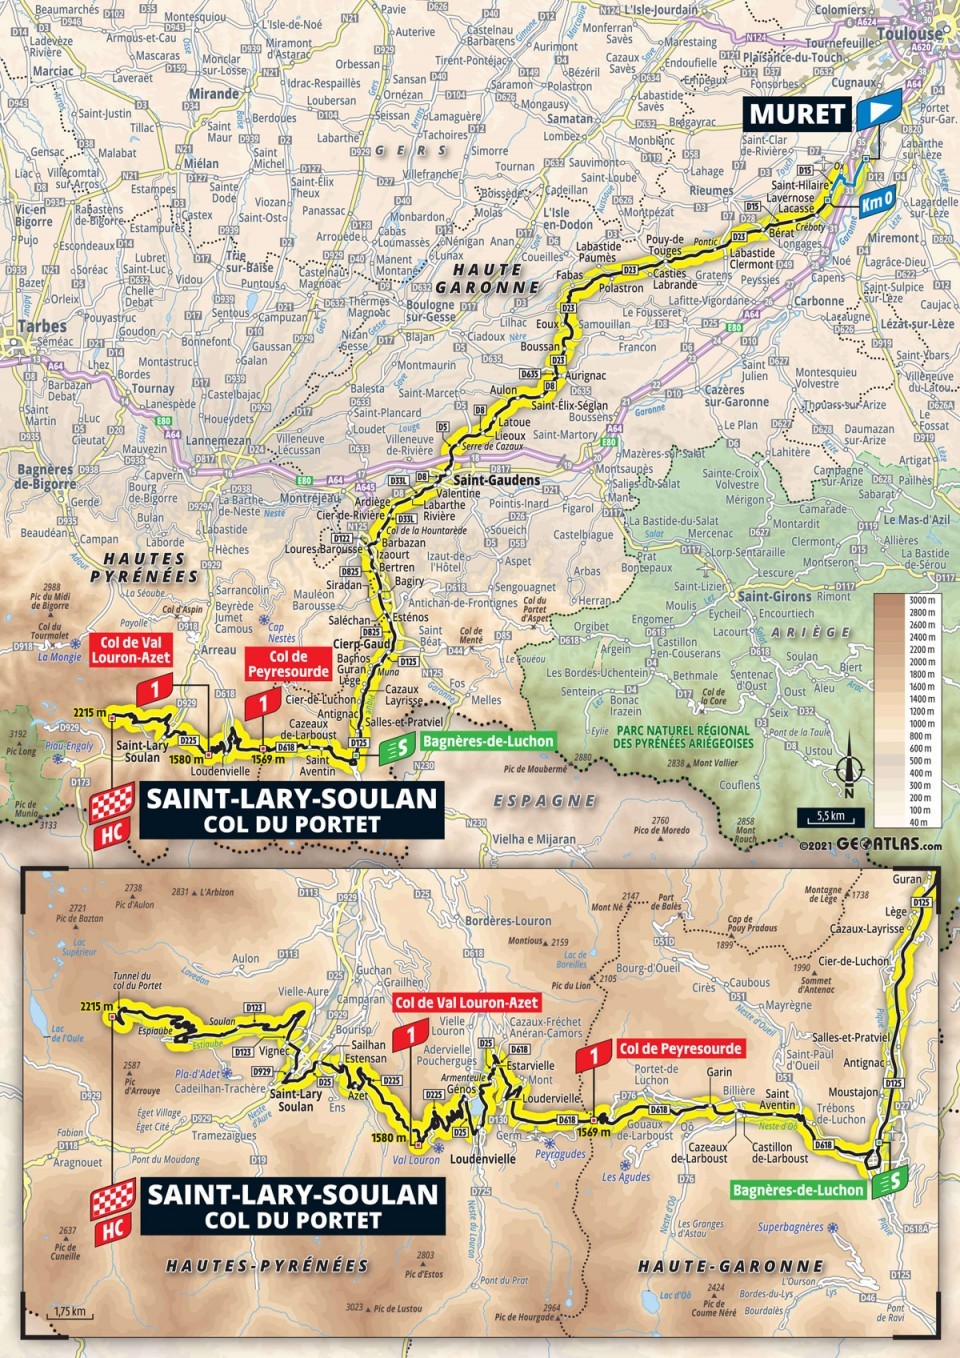 17. etapa na Tour de France 2021 - mapa.